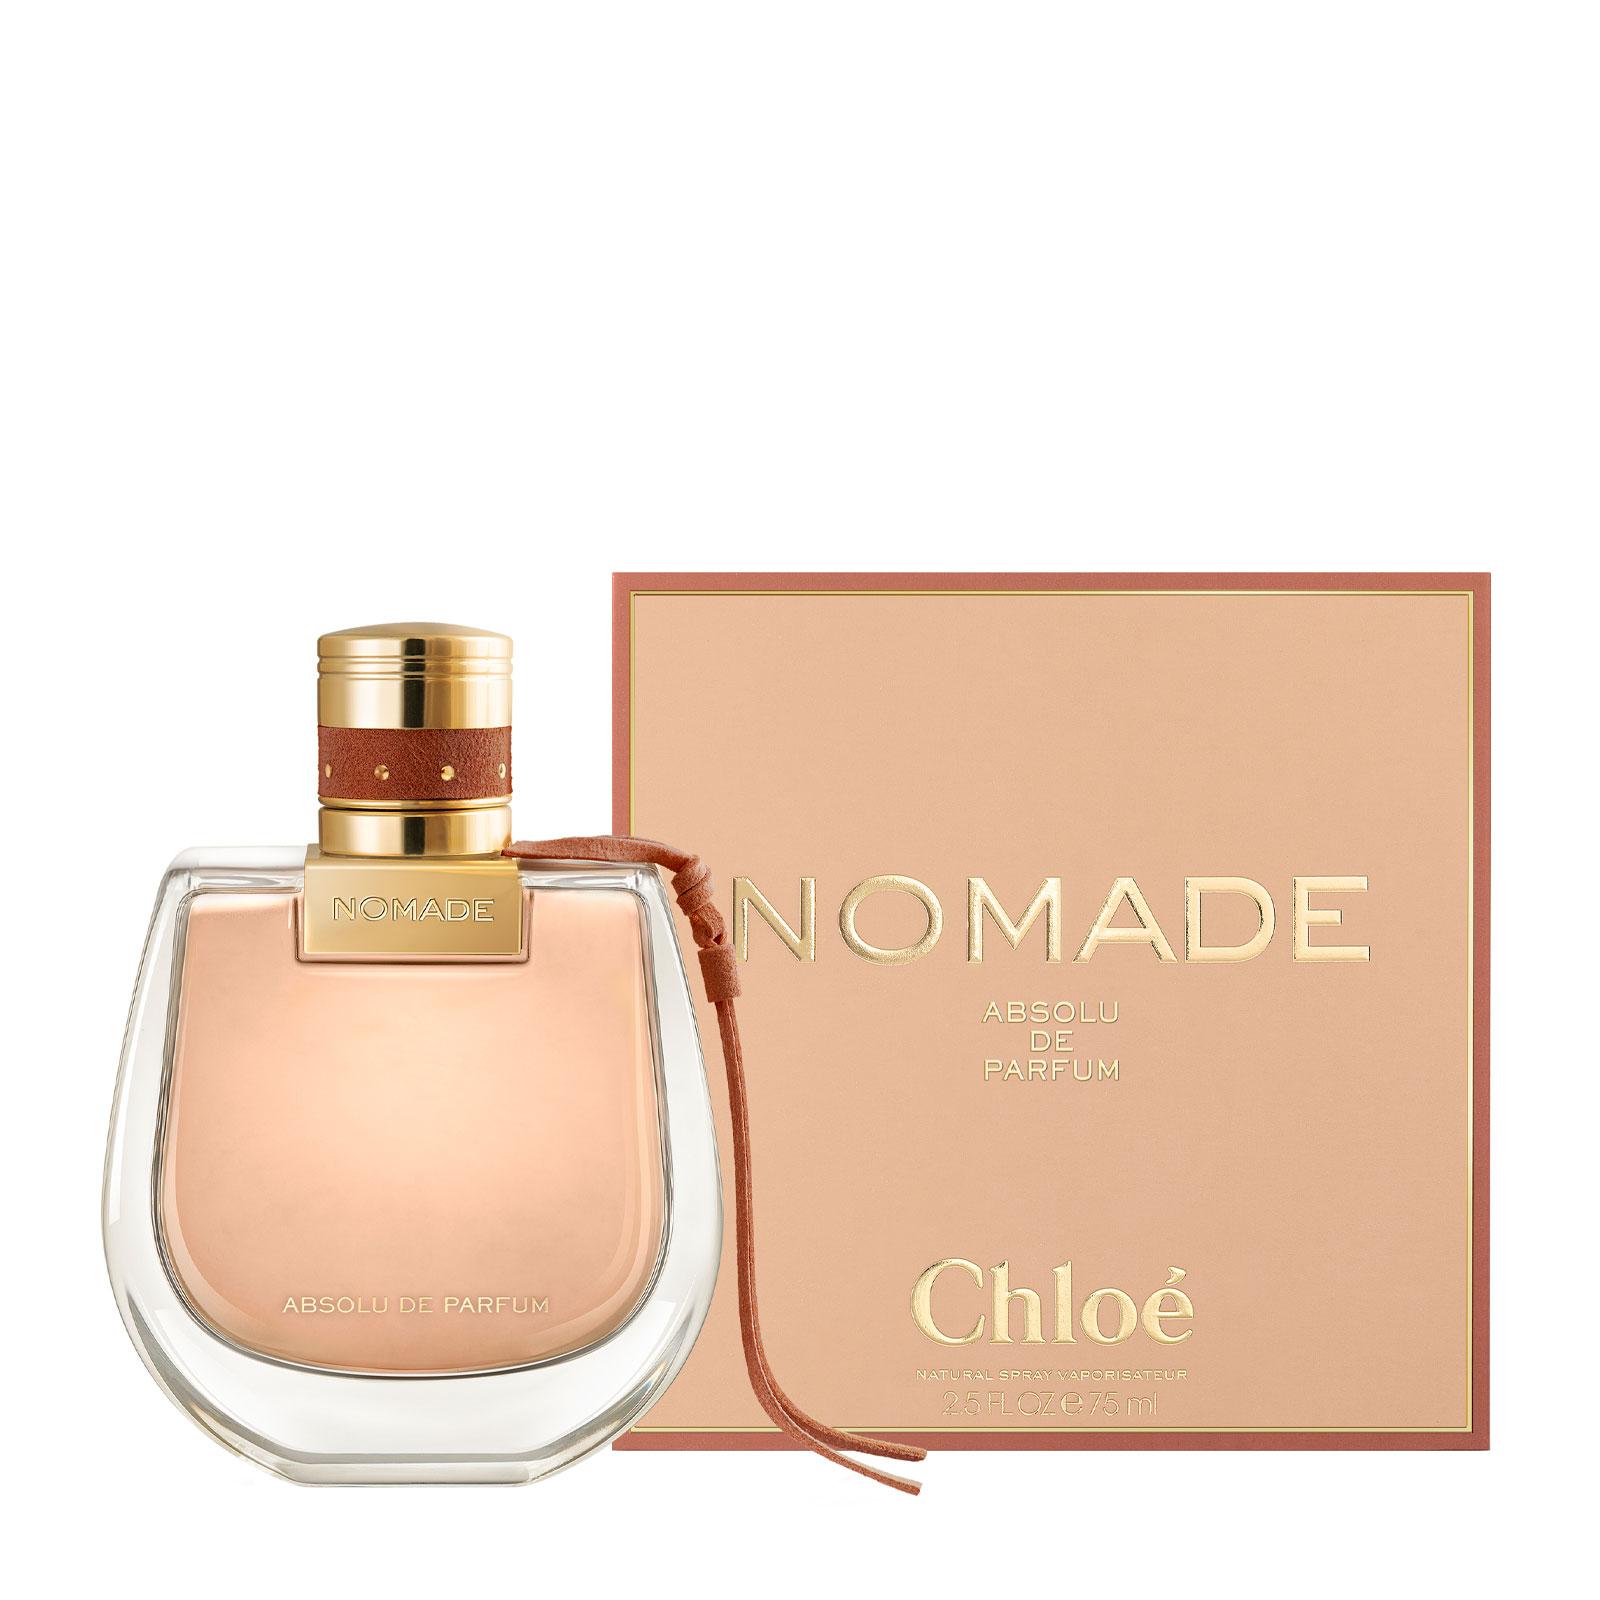 Chloé Nomade Absolu de Parfum 75ml | FEELUNIQUE